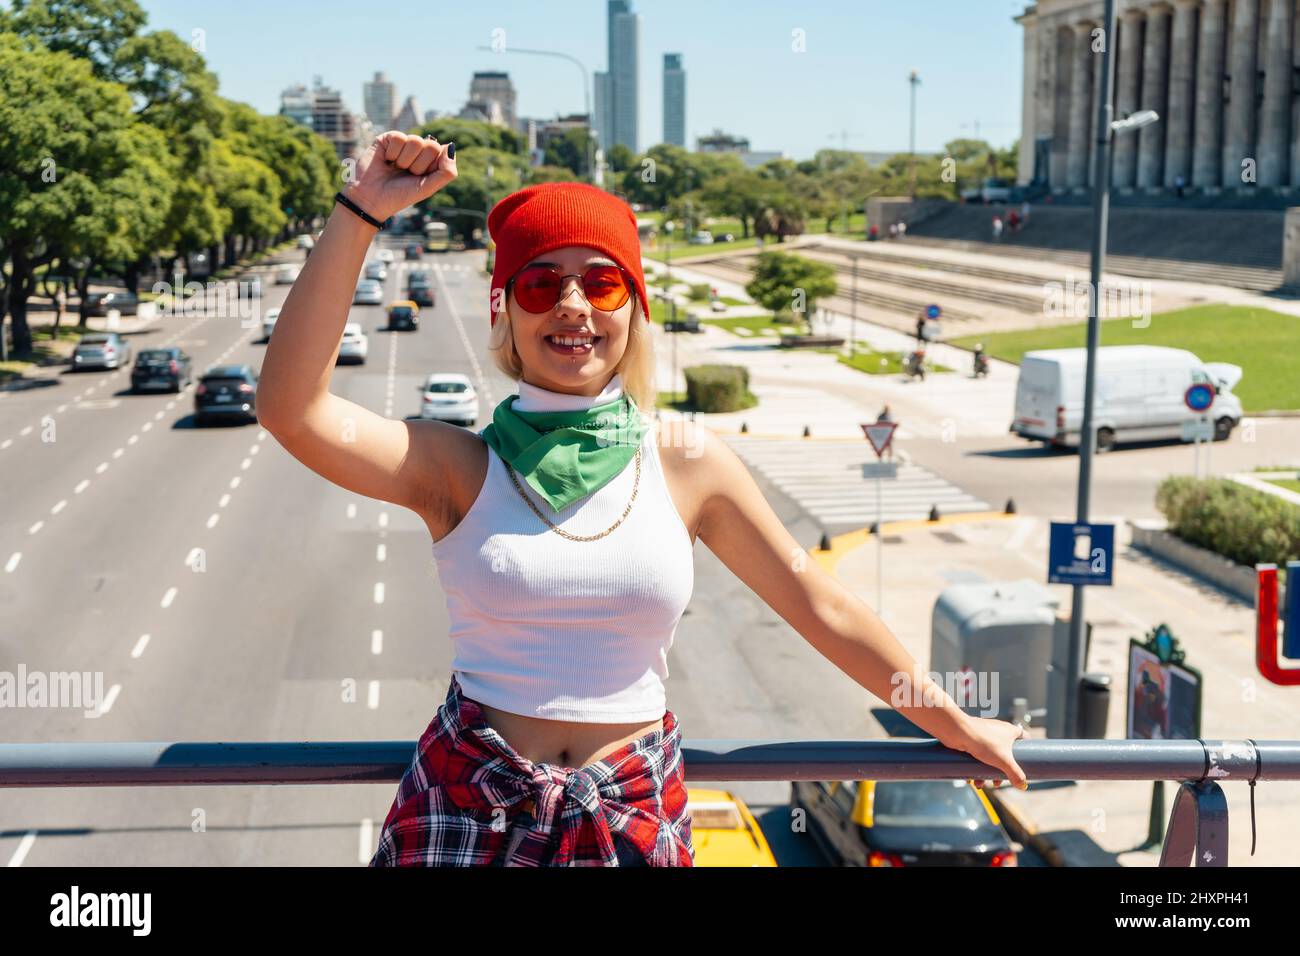 Schöne junge Frau, deren Faust mit einem grünen Schal angehoben wurde, symbolisiert den feministischen Kampf für Gleichheit und legale Abtreibung in Lateinamerika. Konzept Stockfoto